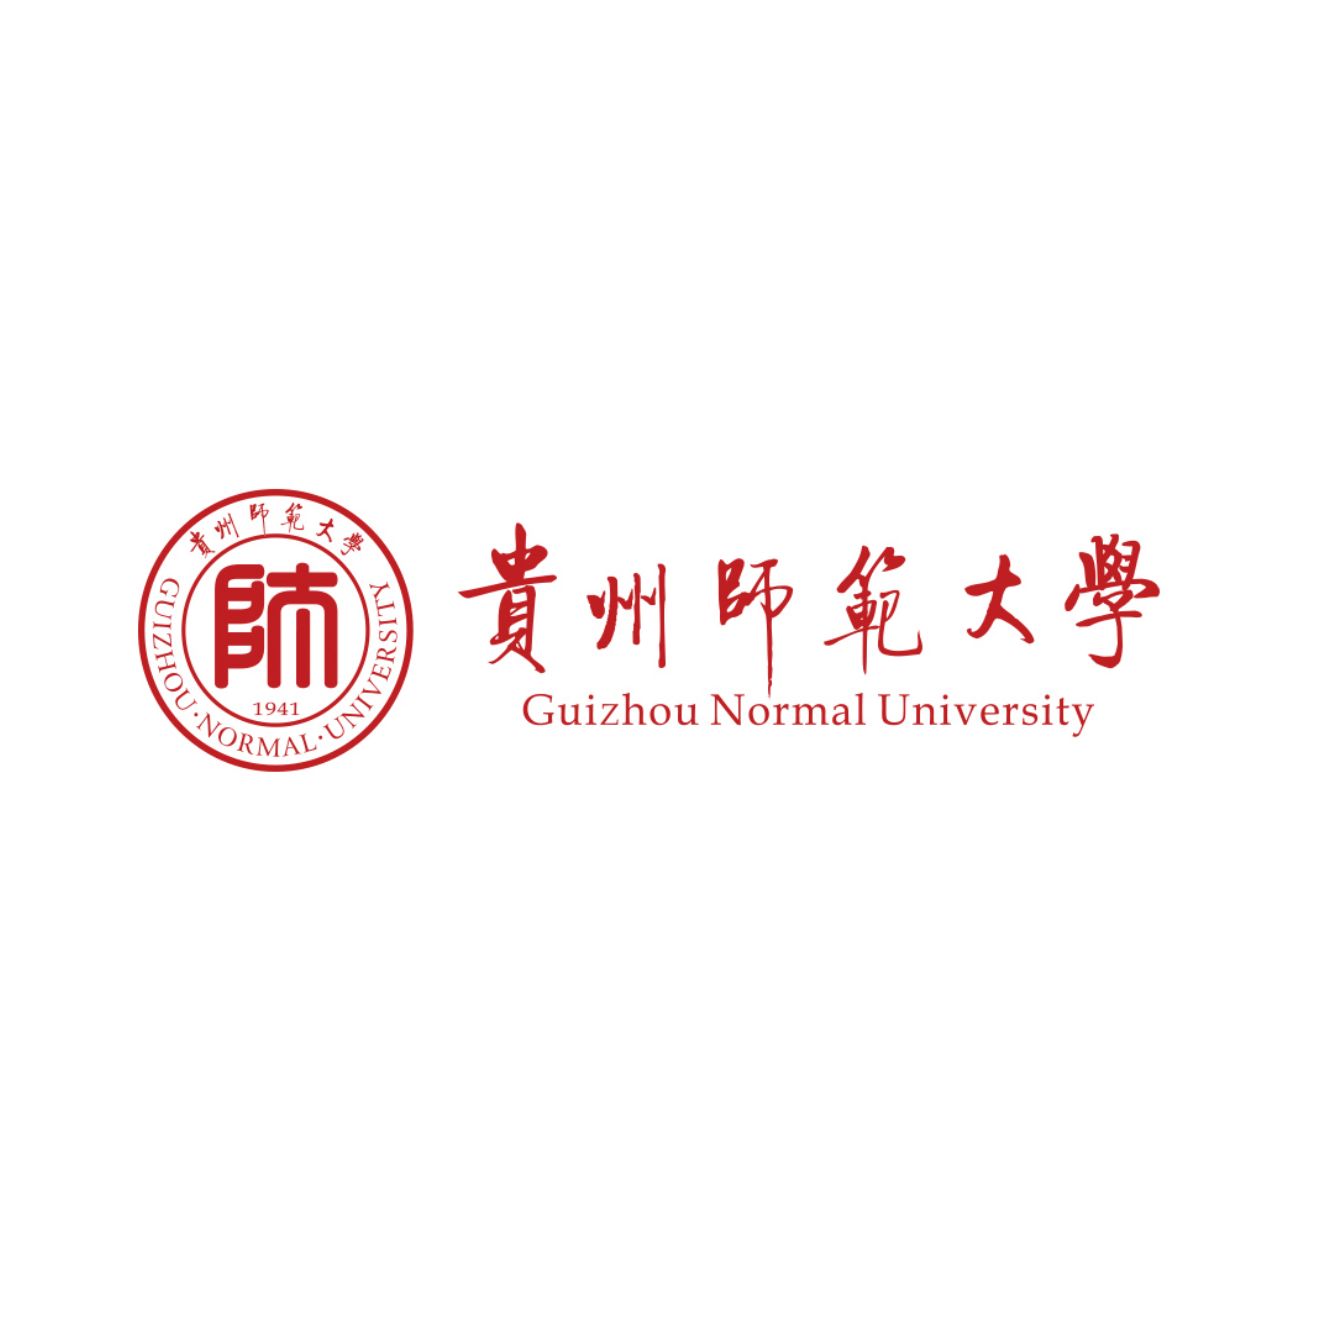 Guizhou Normal University logo